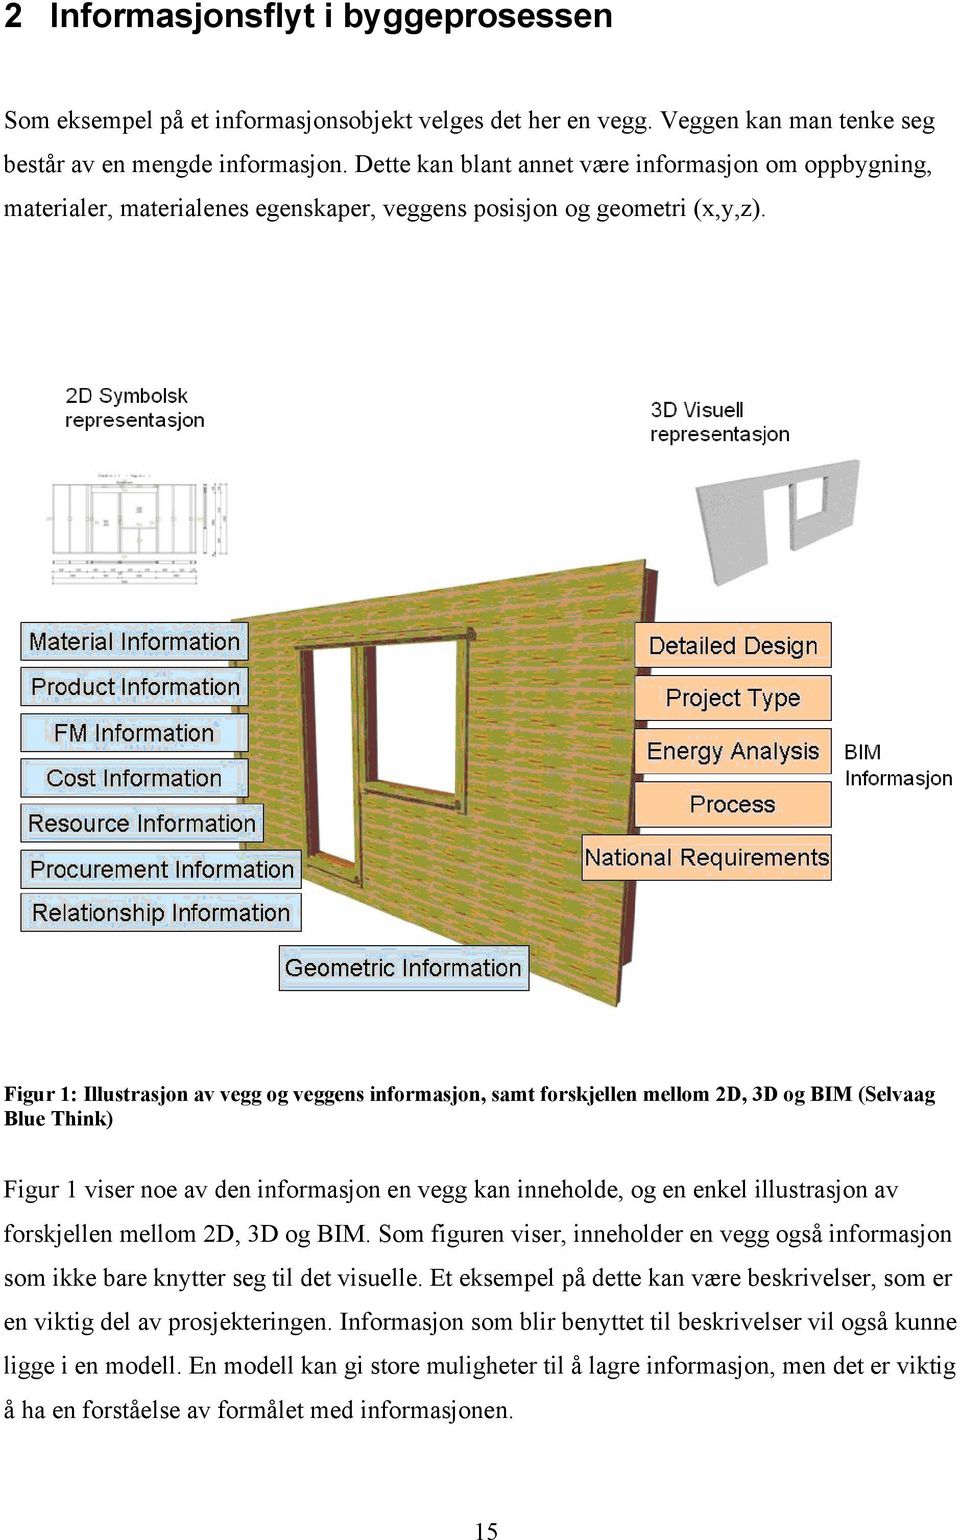 Figur 1: Illustrasjon av vegg og veggens informasjon, samt forskjellen mellom 2D, 3D og BIM (Selvaag Blue Think) Figur 1 viser noe av den informasjon en vegg kan inneholde, og en enkel illustrasjon